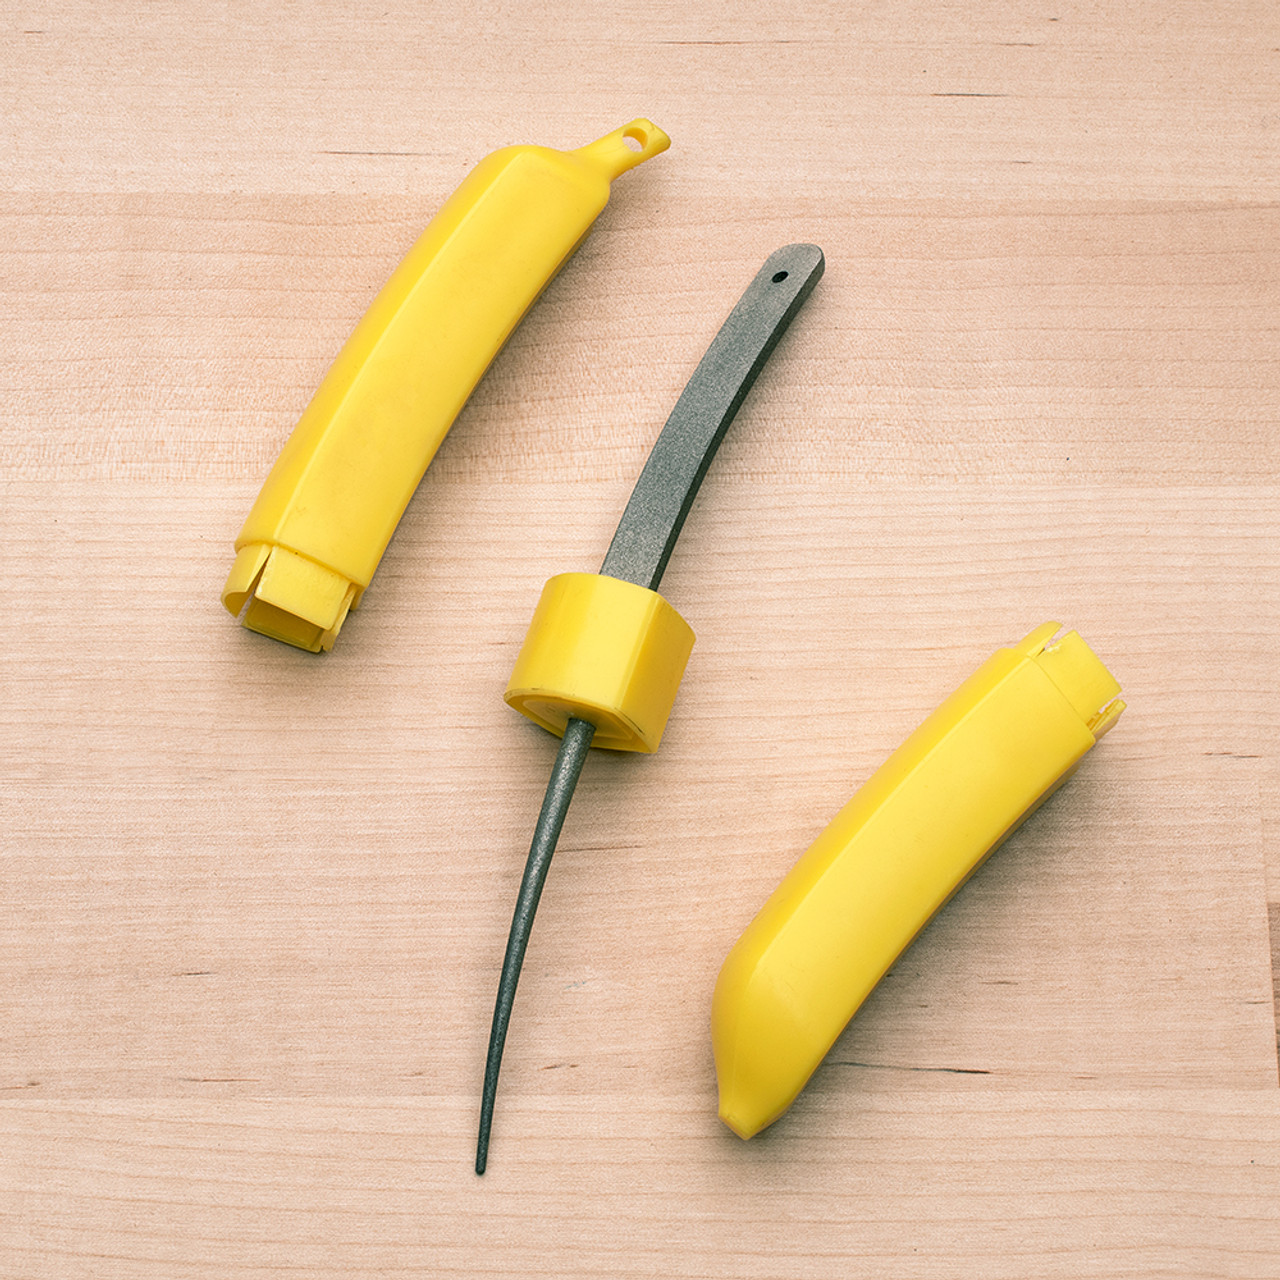 The Banana-Shaped Sharpening Miracle by Garrett Wade